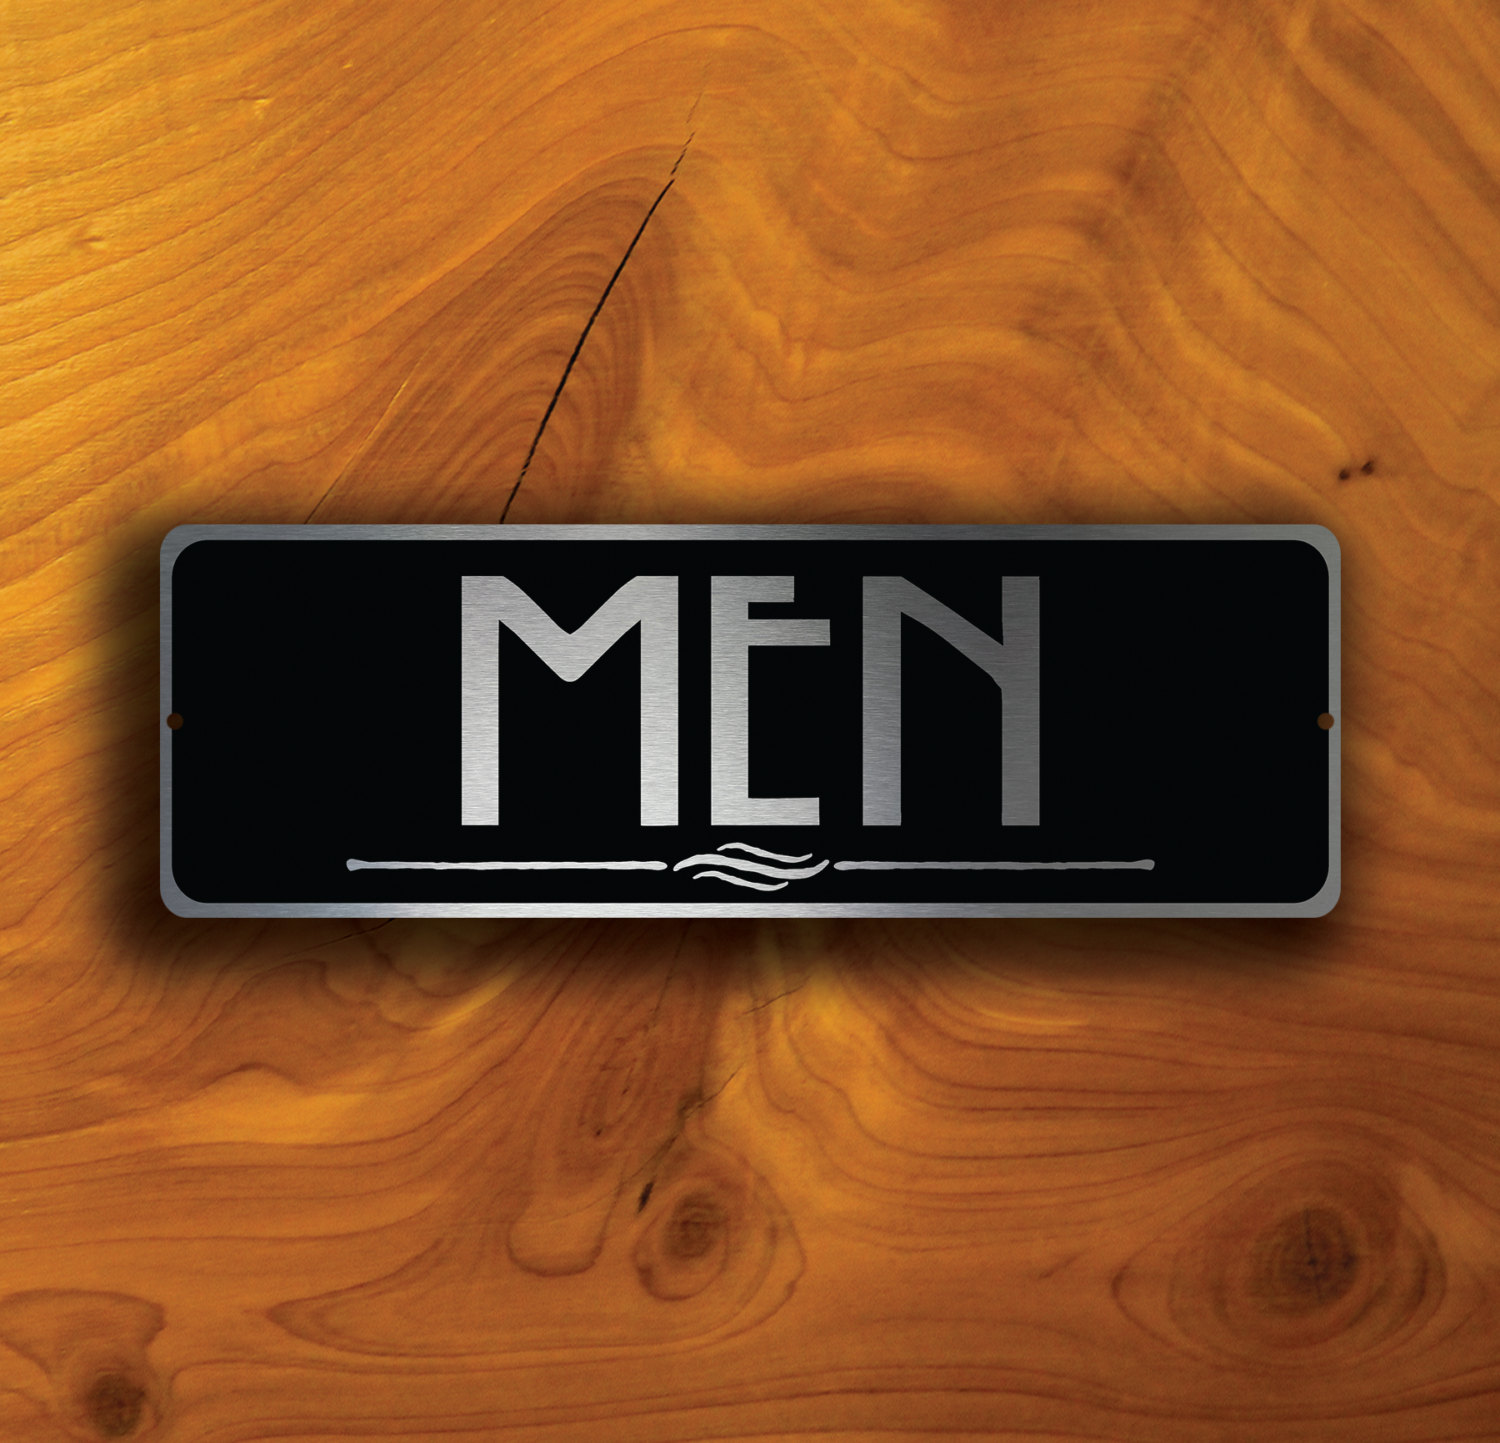 Mens Restroom Sign - Aluminum Restroom Signs | TRADESAFE